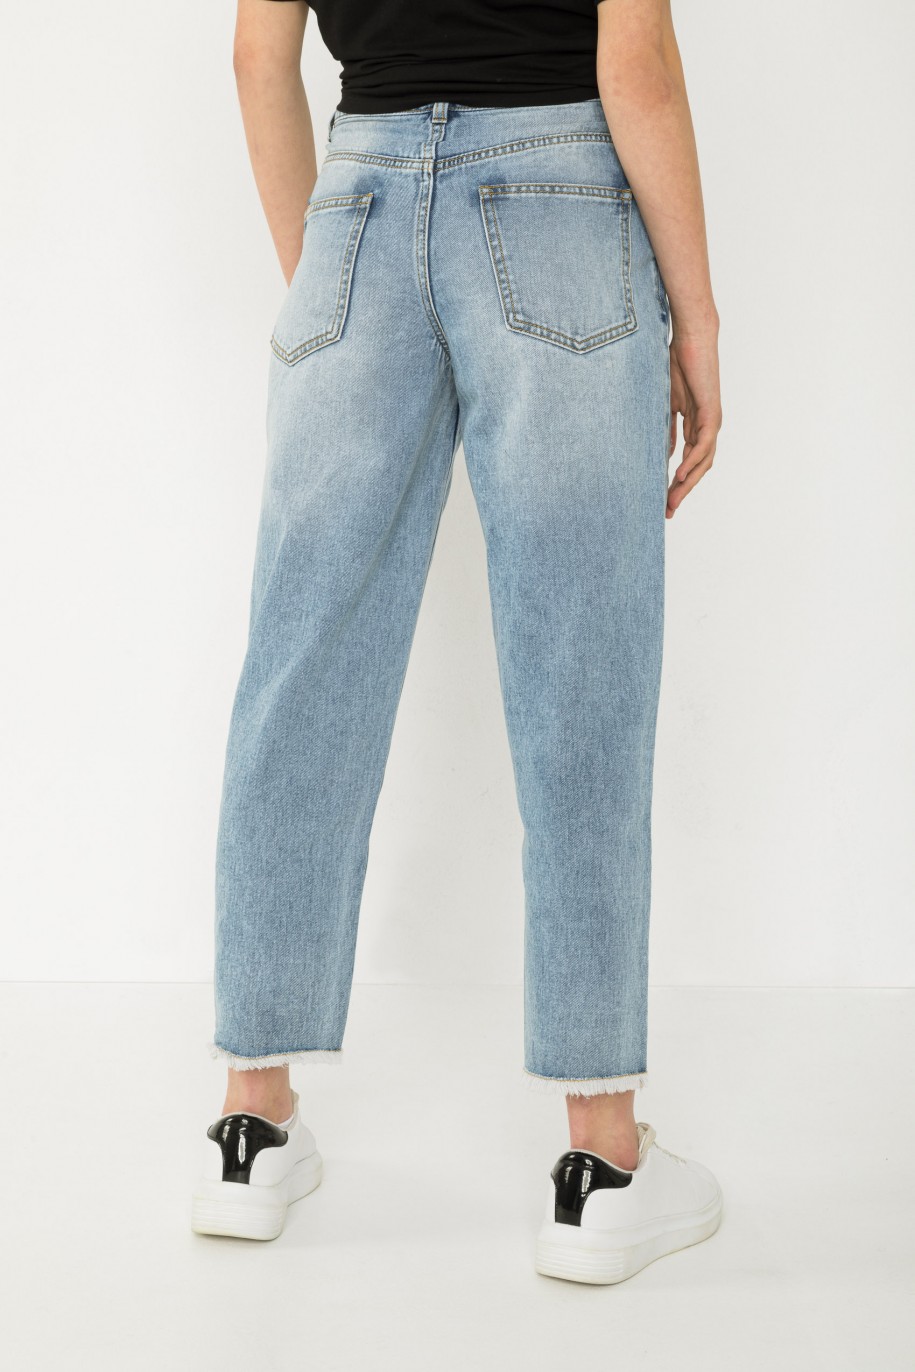 Niebieskie jeansy typu SLOUCHY - 43513